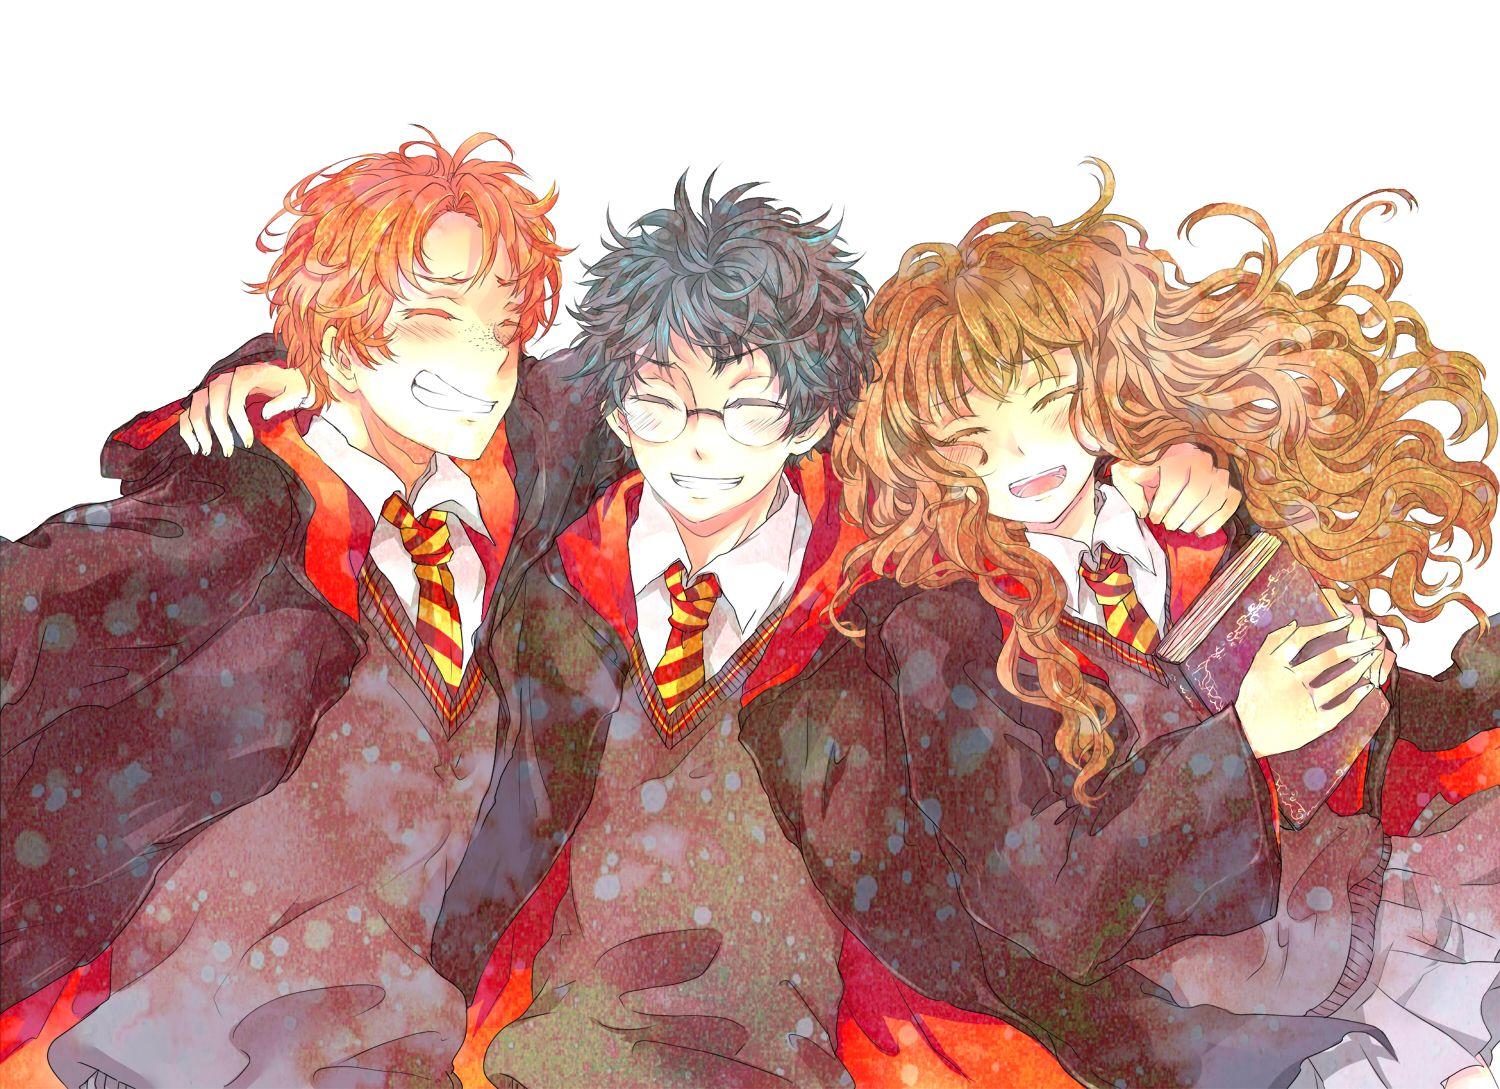 Harry Potter Anime  Harry Potter Fan Art 28130817  Fanpop